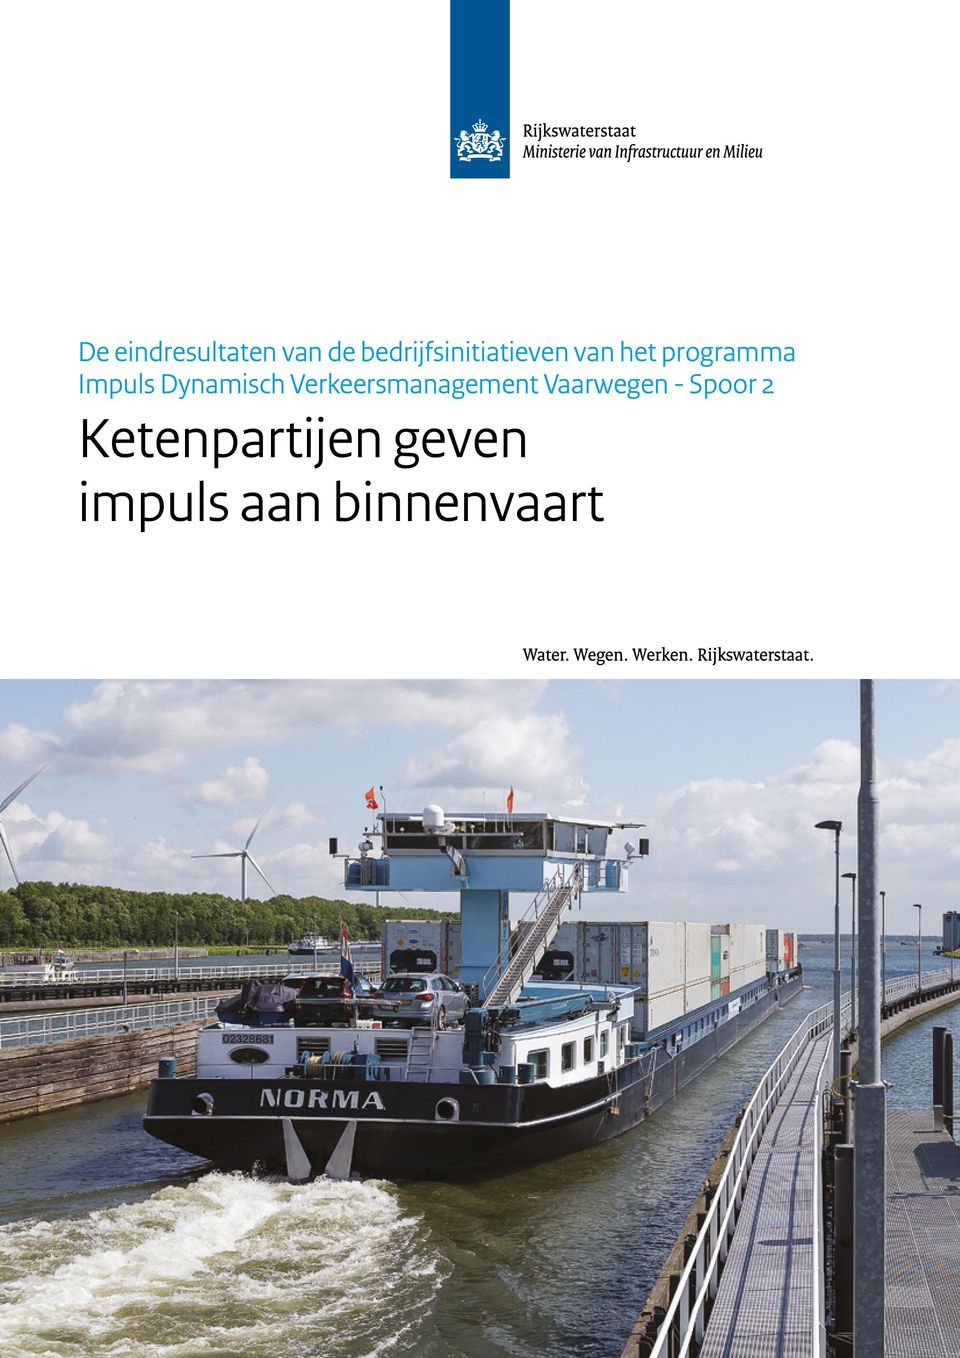 impuls aan binnenvaart Dit is een uitgave van Rijkswaterstaat www.